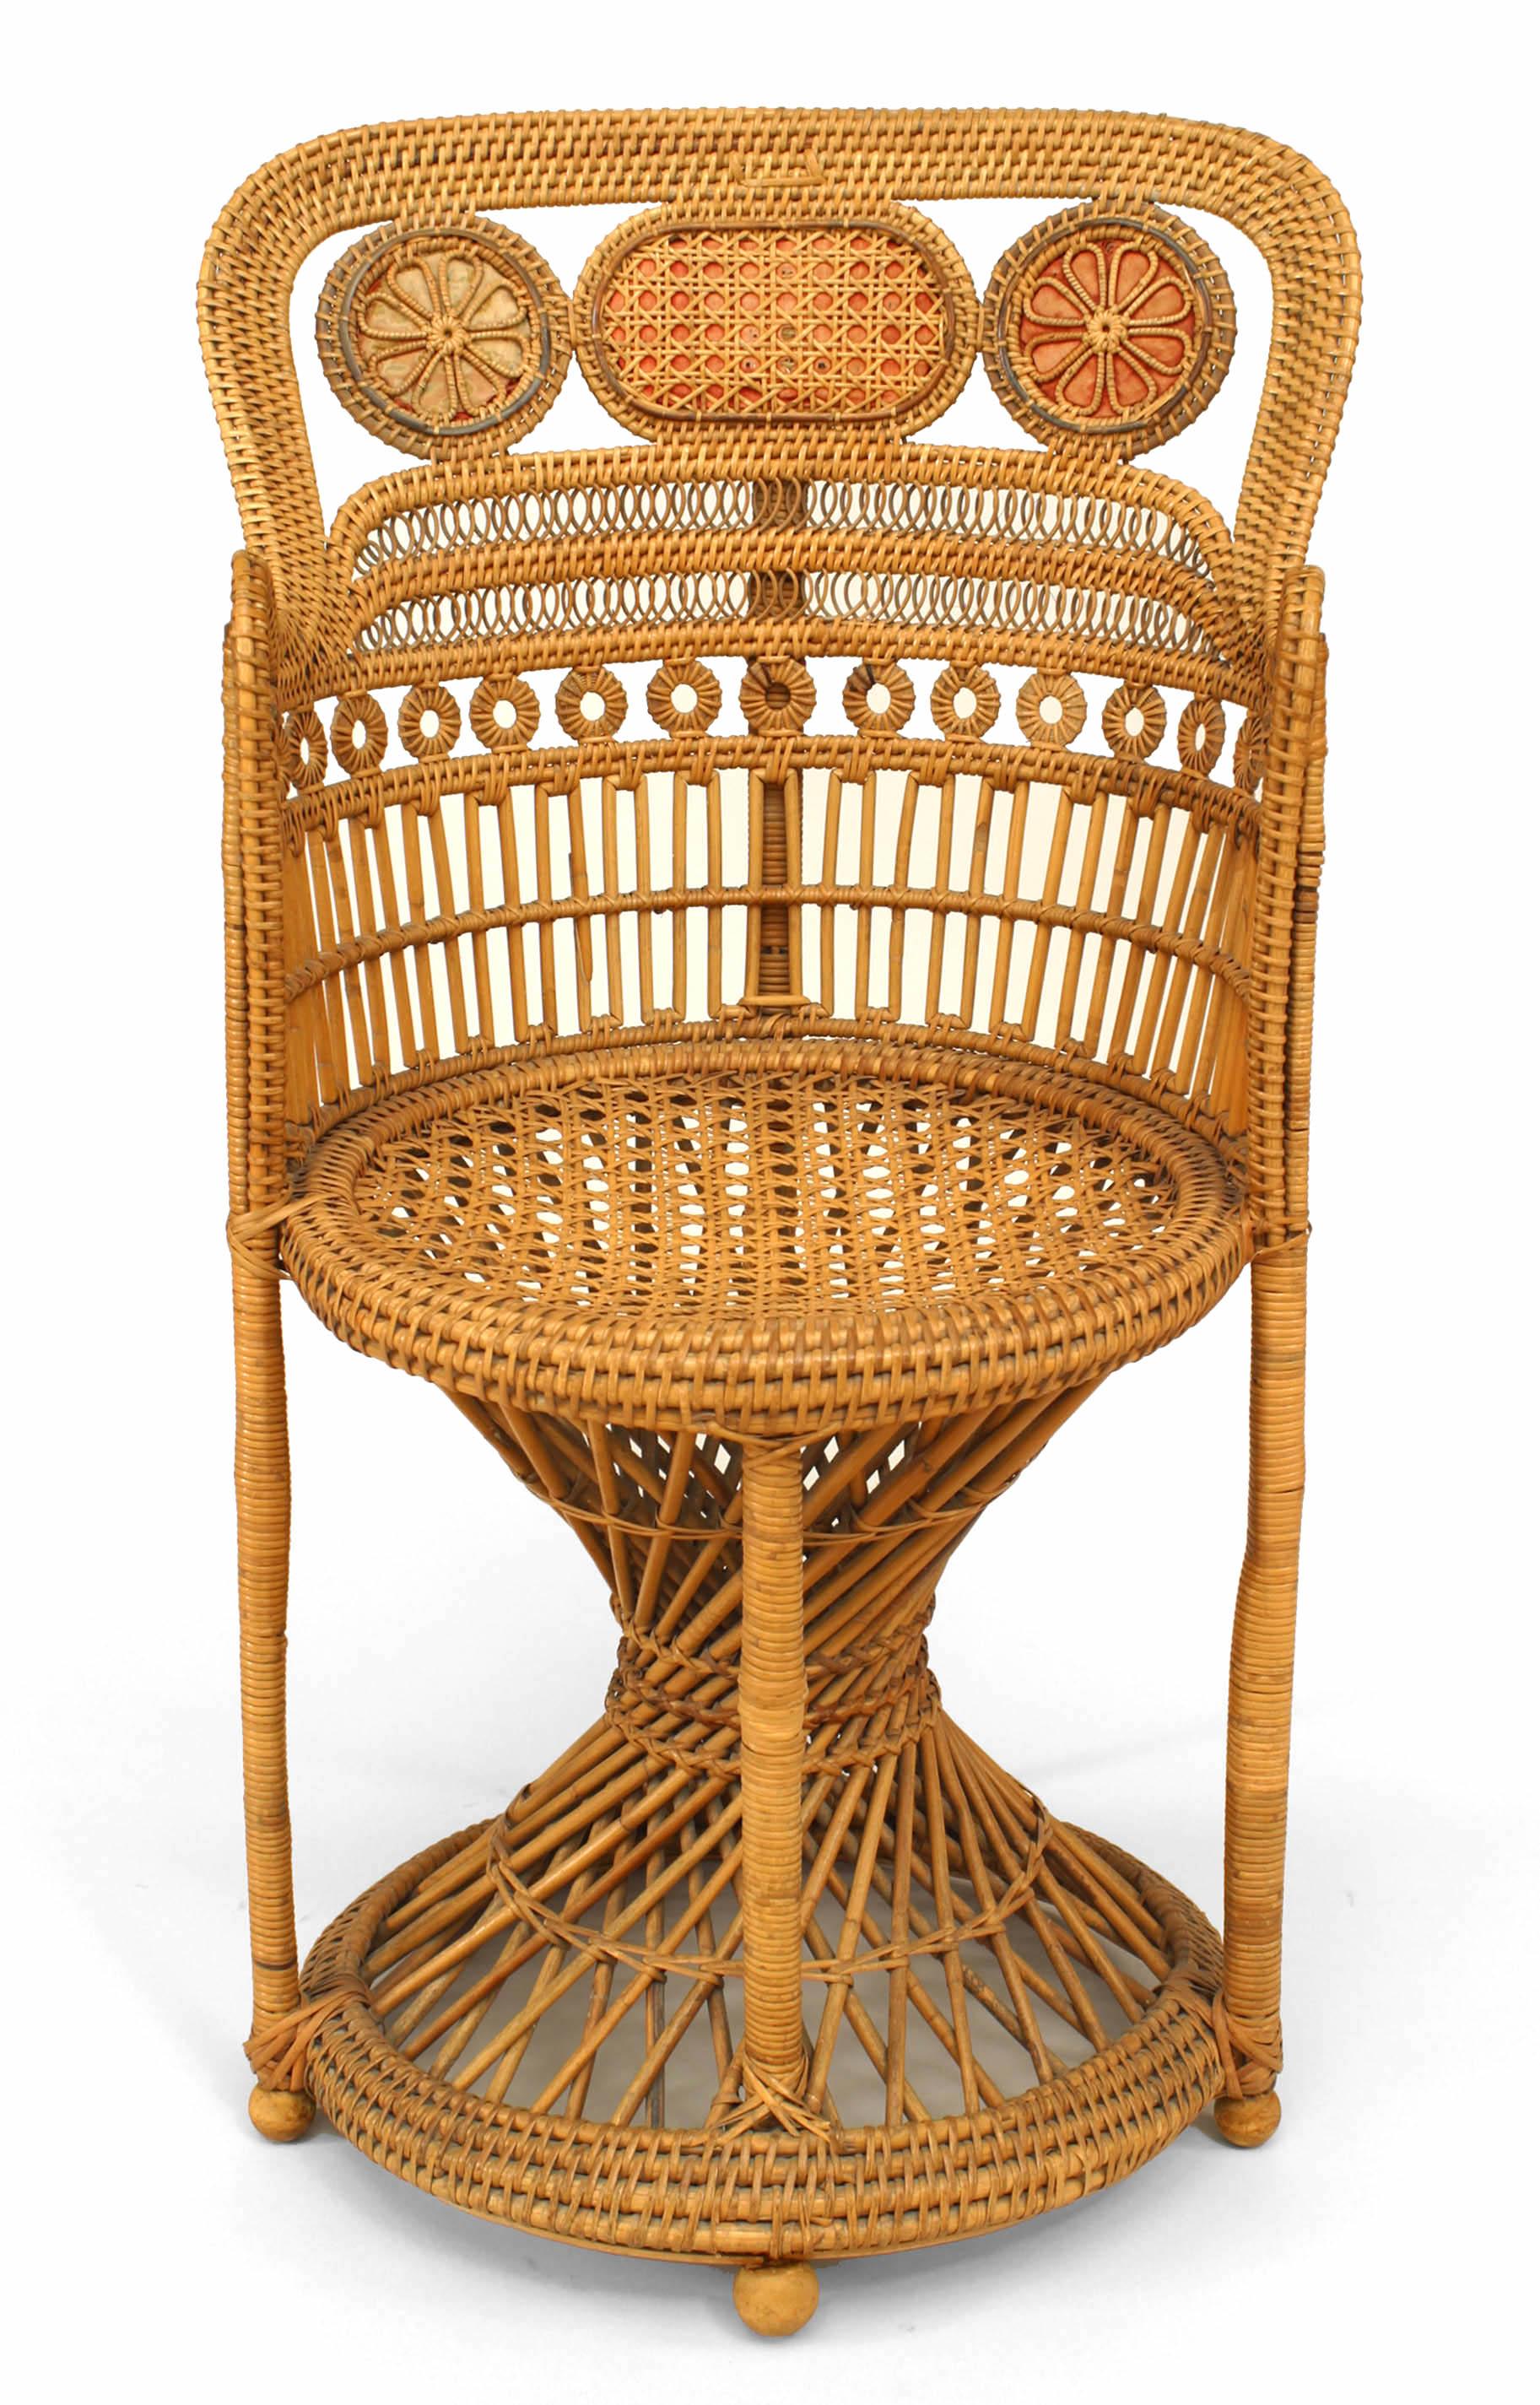 Englischer Sessel im Regency-Stil (19. Jh.) im Brighton-Design mit runder Rückenlehne aus Naturgeflecht und Glasfuß.
